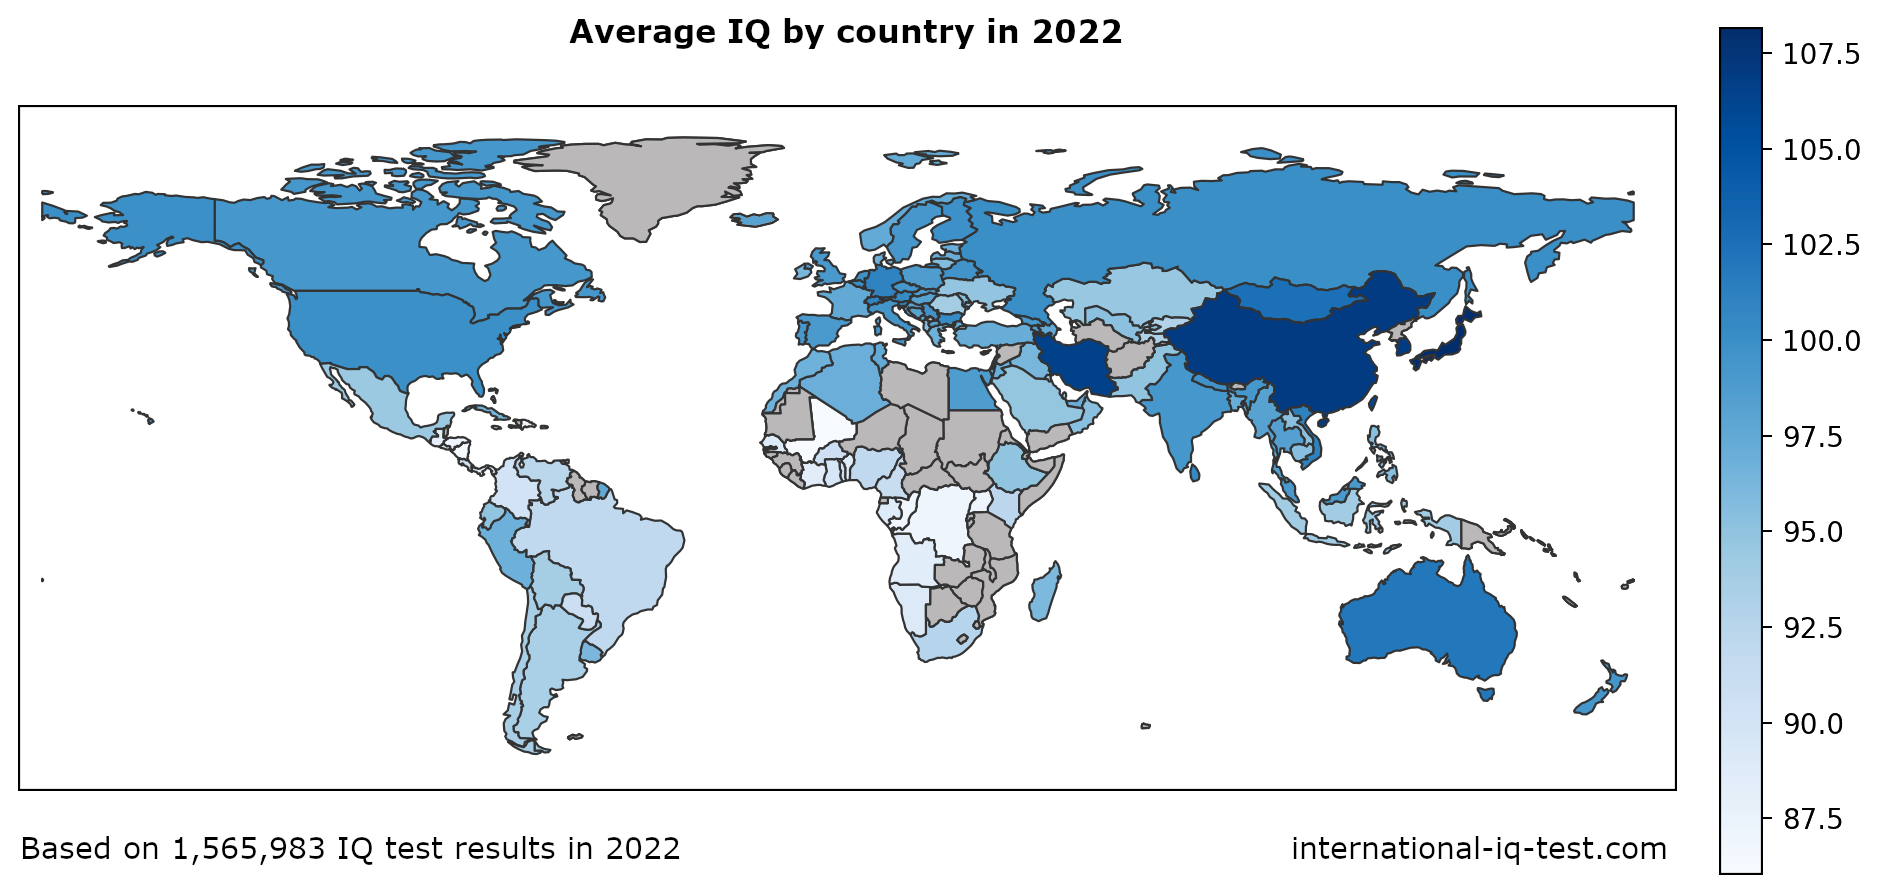 Verdenskort, der viser den gennemsnitlige IQ pr. land i 2022 med blå nuancer fra lysest til mørkest